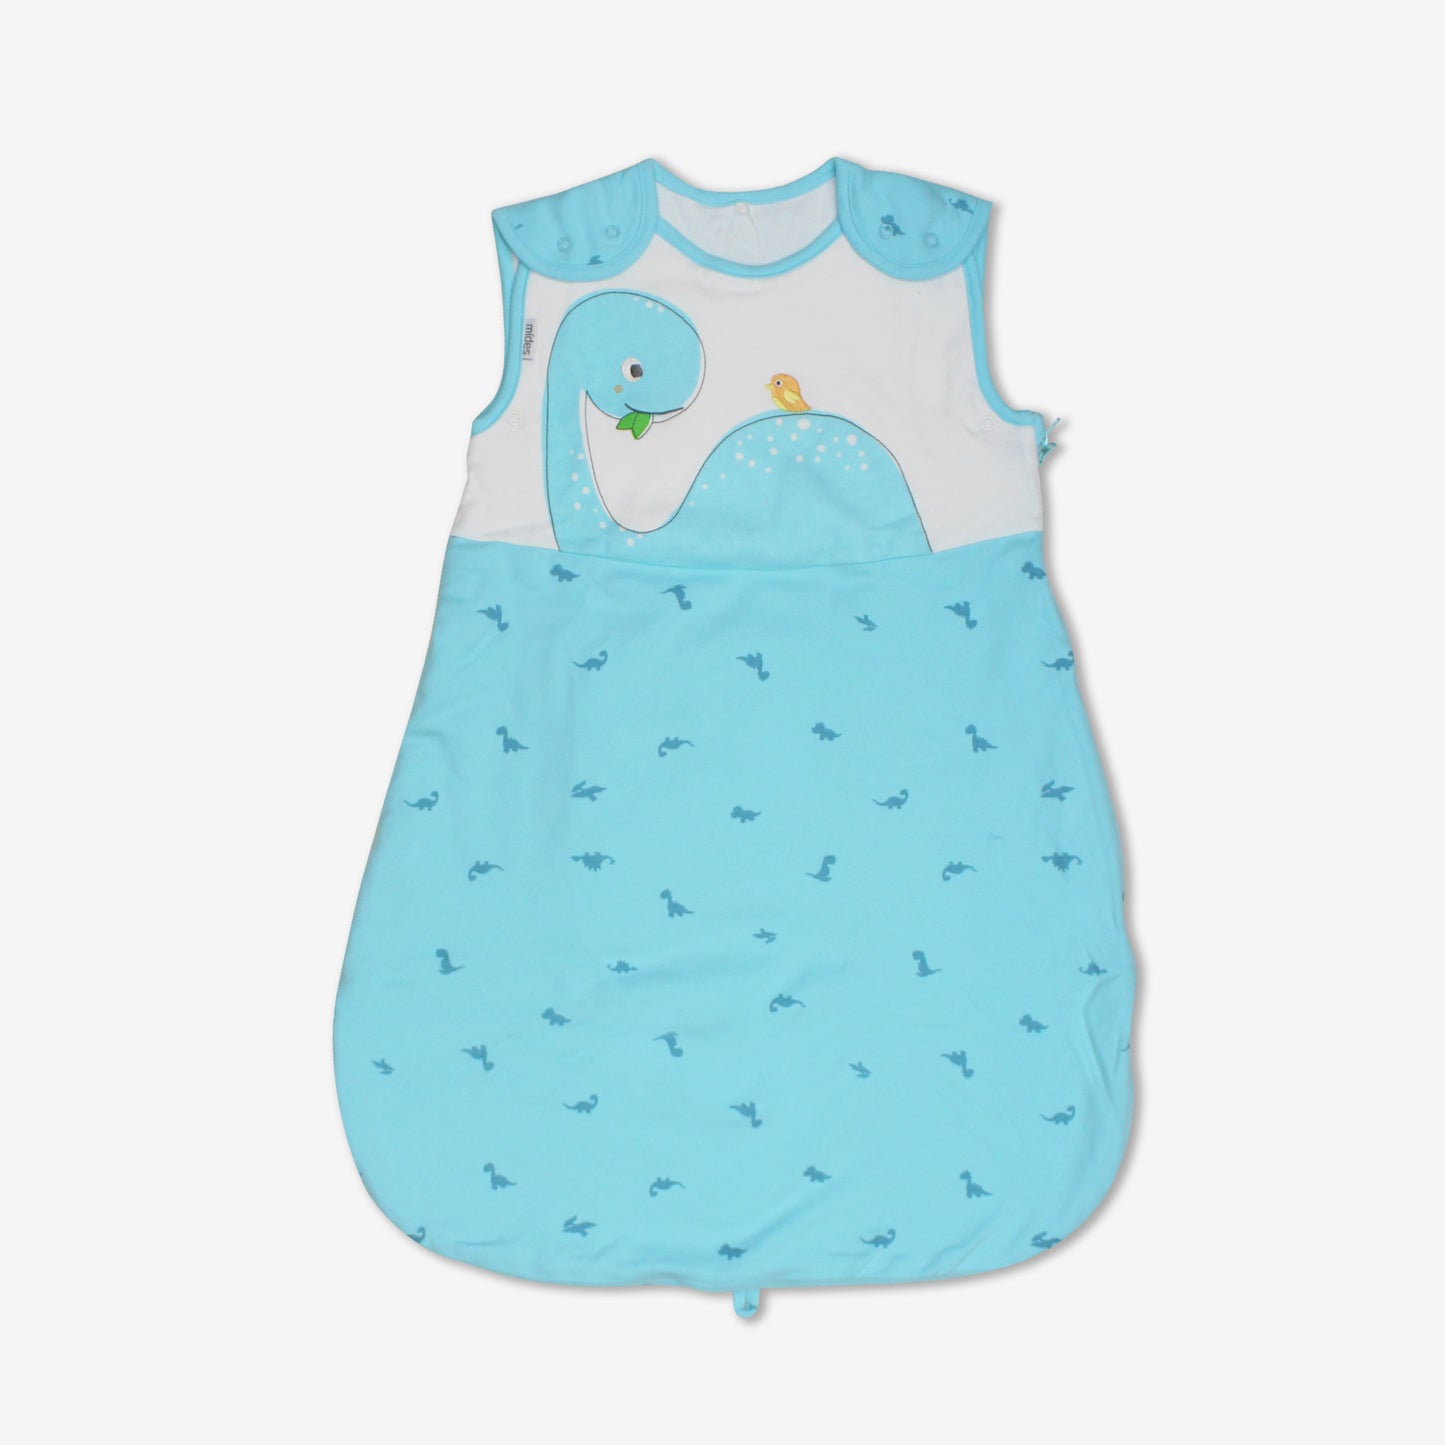 MiDes │ Happy Dino │ Sky Blue Dinosaur │ Infant Padded Vest Sleeping Bag (6-18 months-0.5 tog)